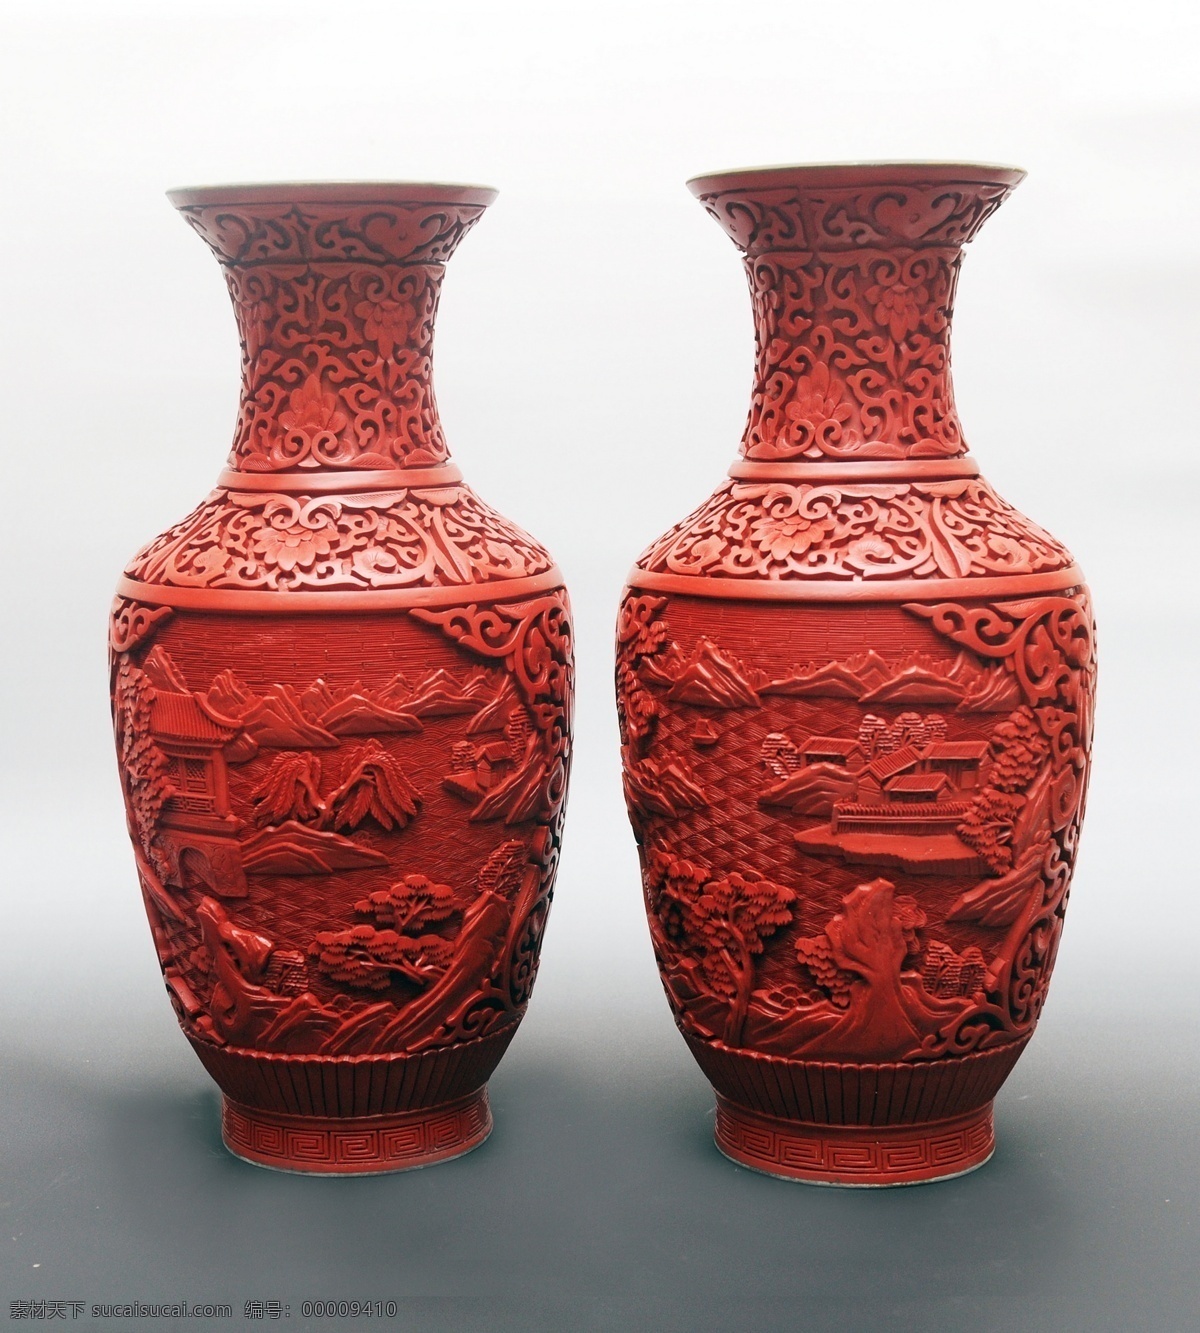 剔红山水观音 漆雕 雕漆 漆器 罐子 剔红 剔彩 珍品 国粹 传统文化 文化艺术